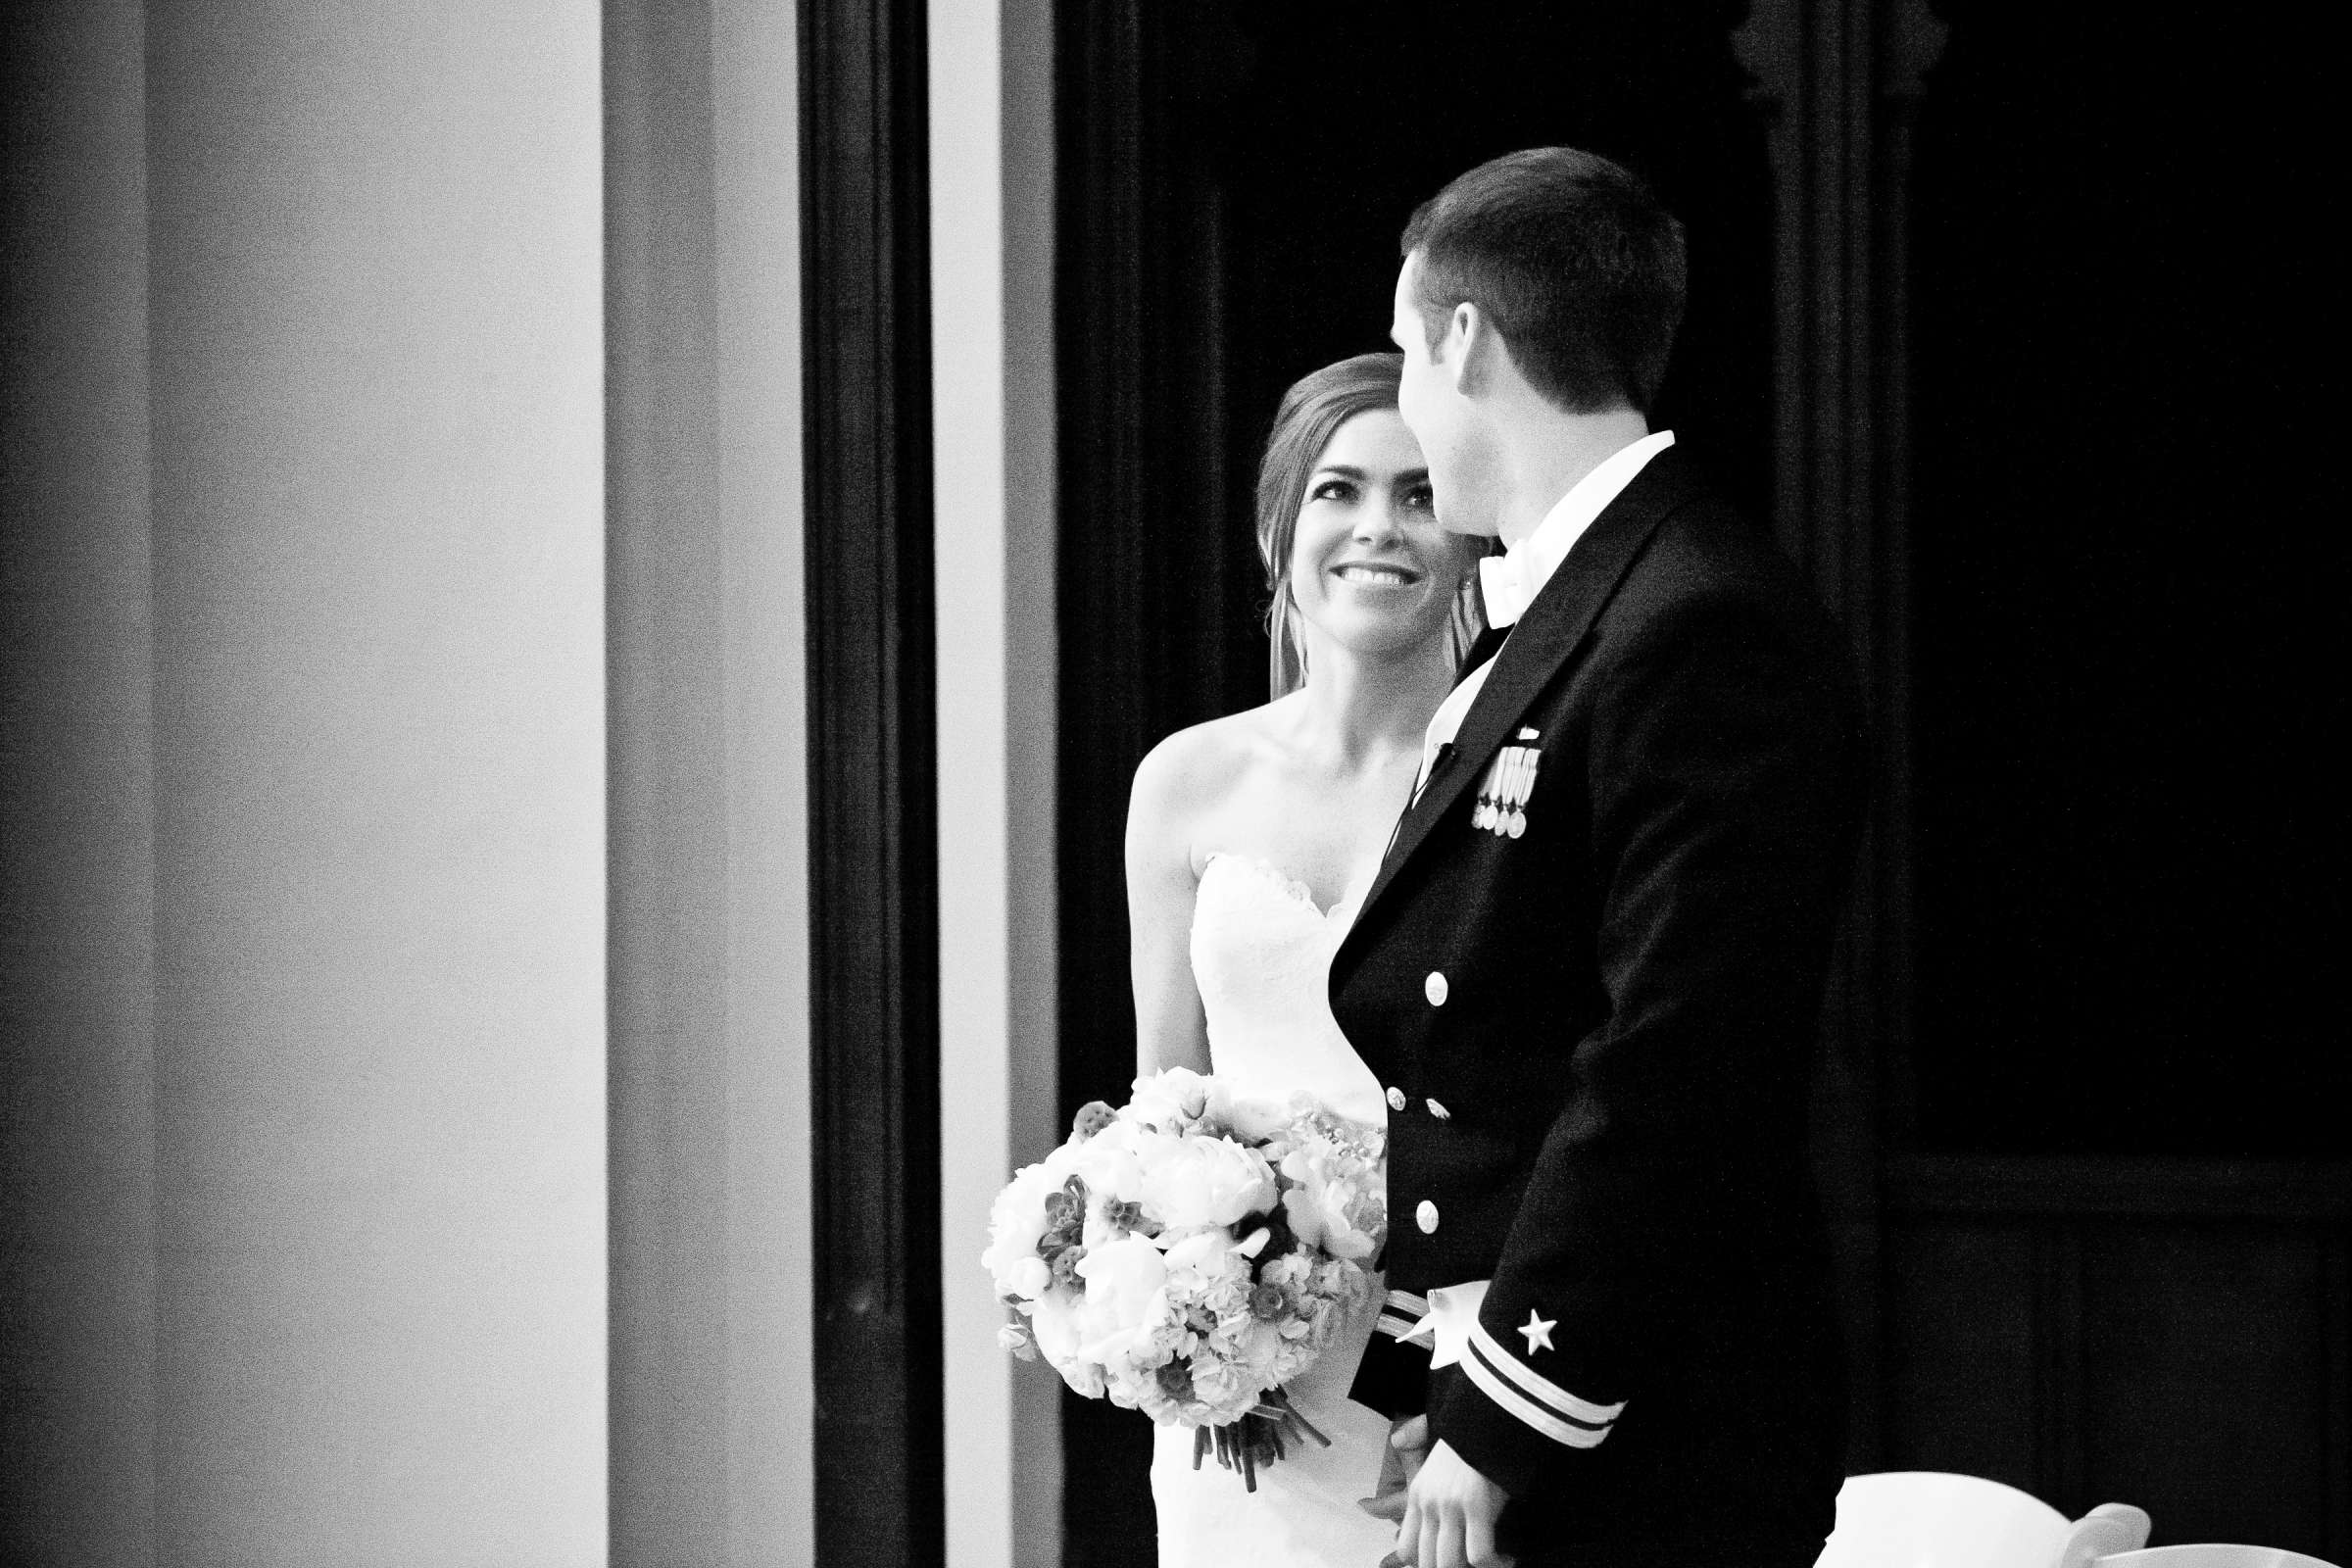 Admiral Kidd Club Wedding coordinated by I Do Weddings, Ashley and Rhett Wedding Photo #358473 by True Photography